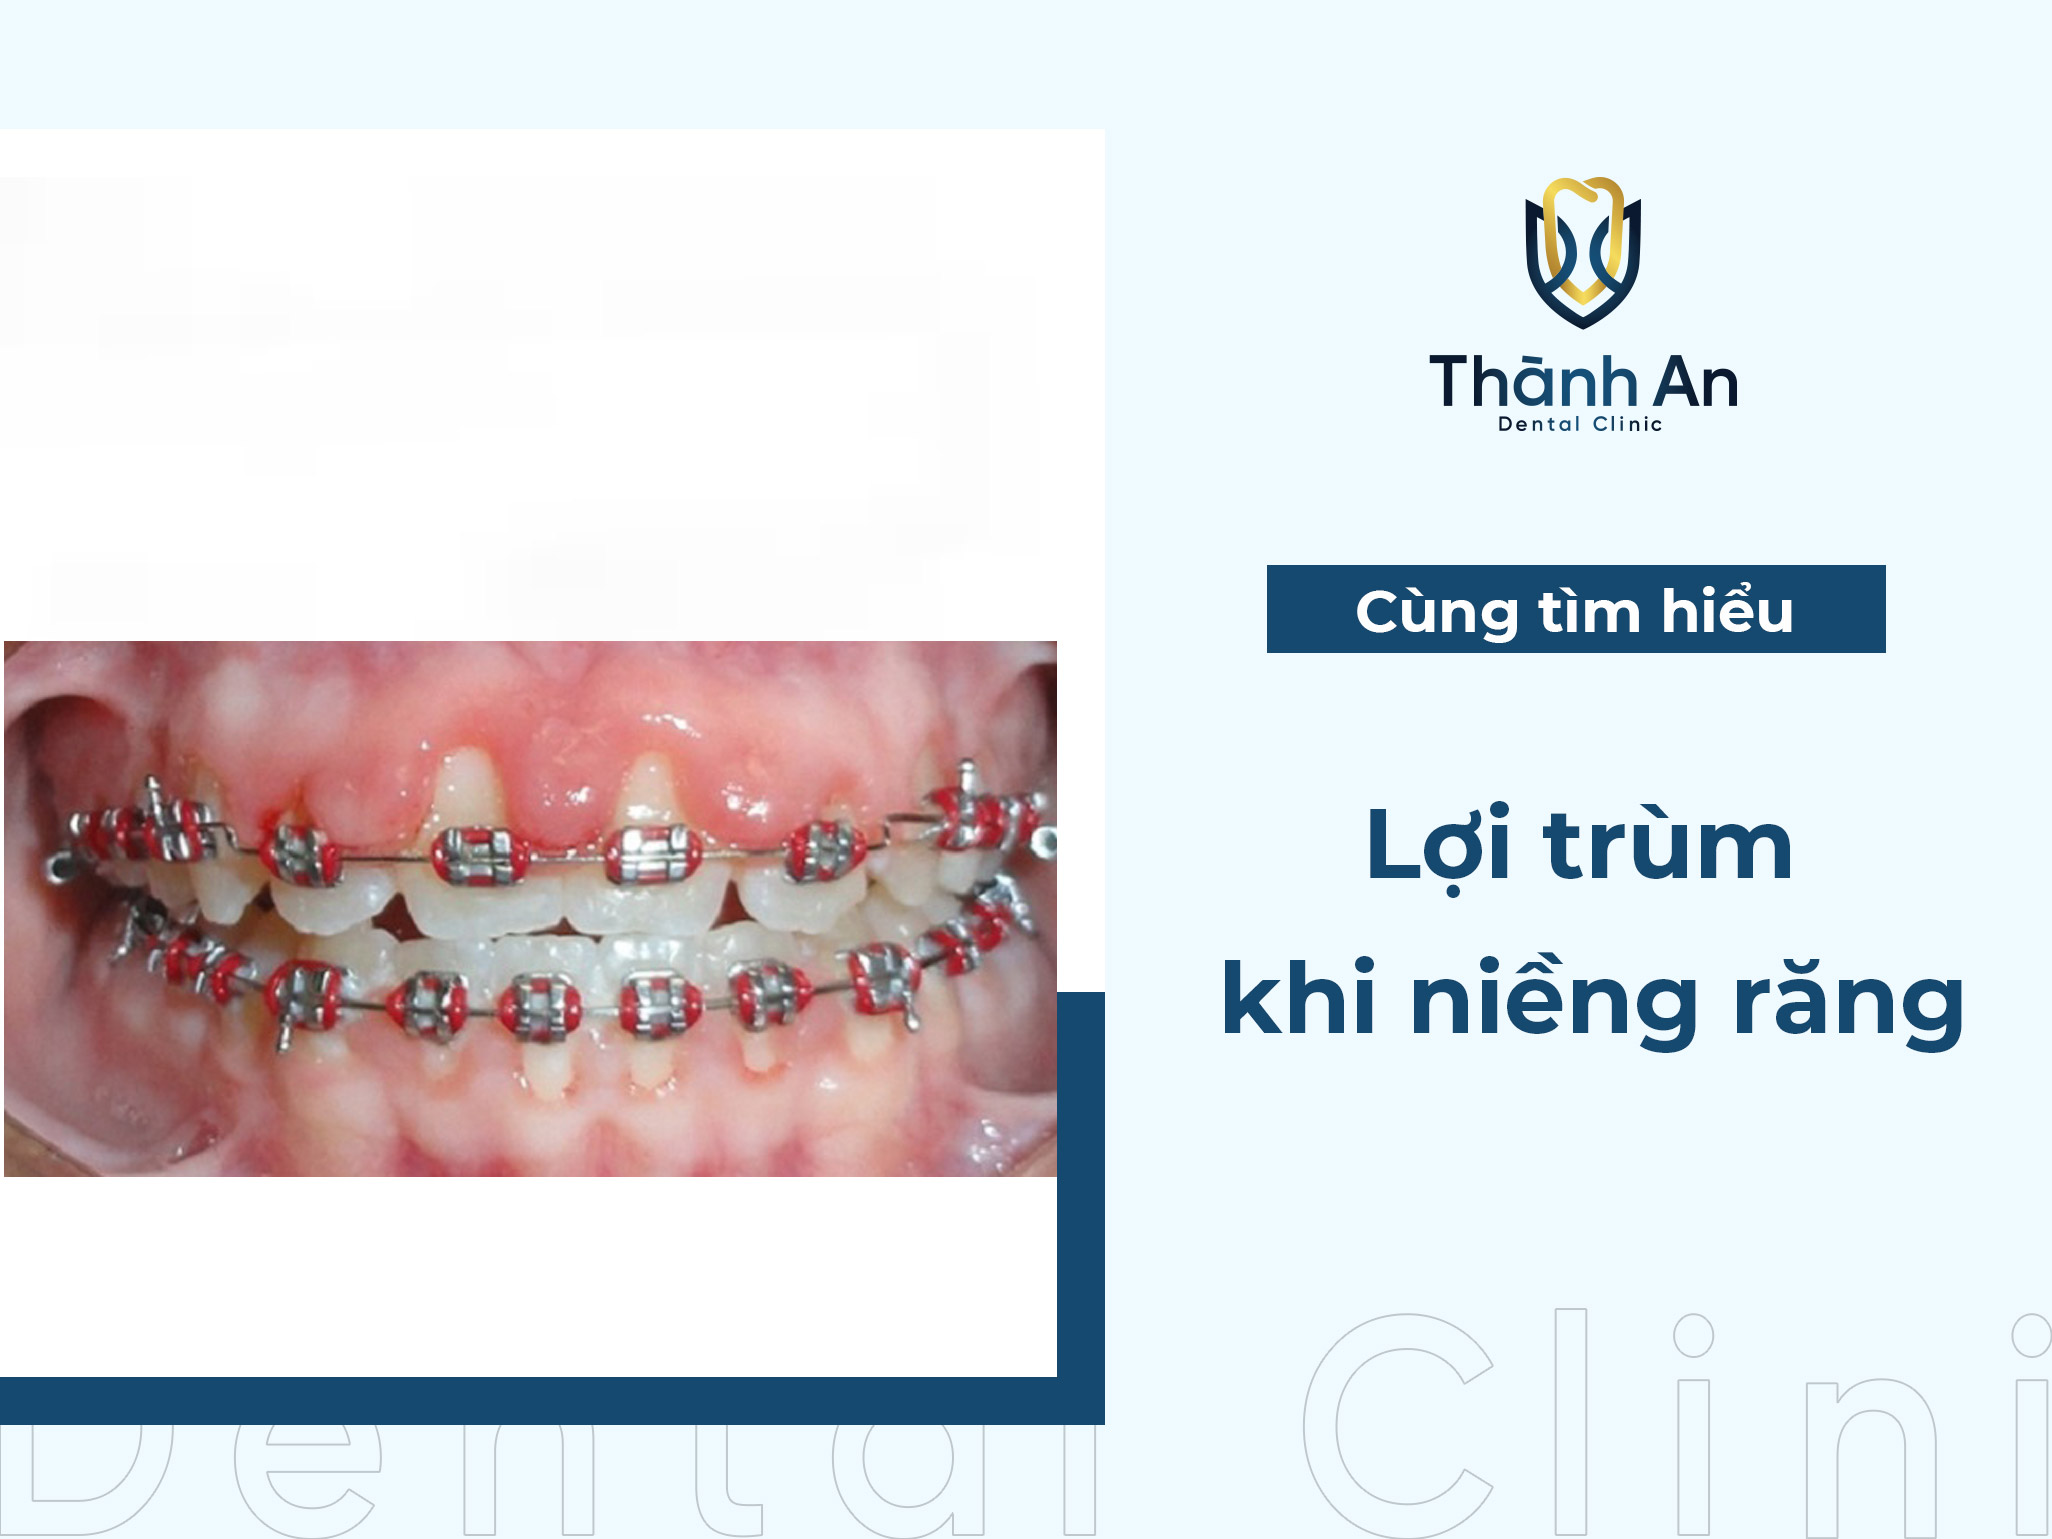 Lợi trùm khi niềng răng: Nguyên nhân, triệu chứng và cách khắc phục